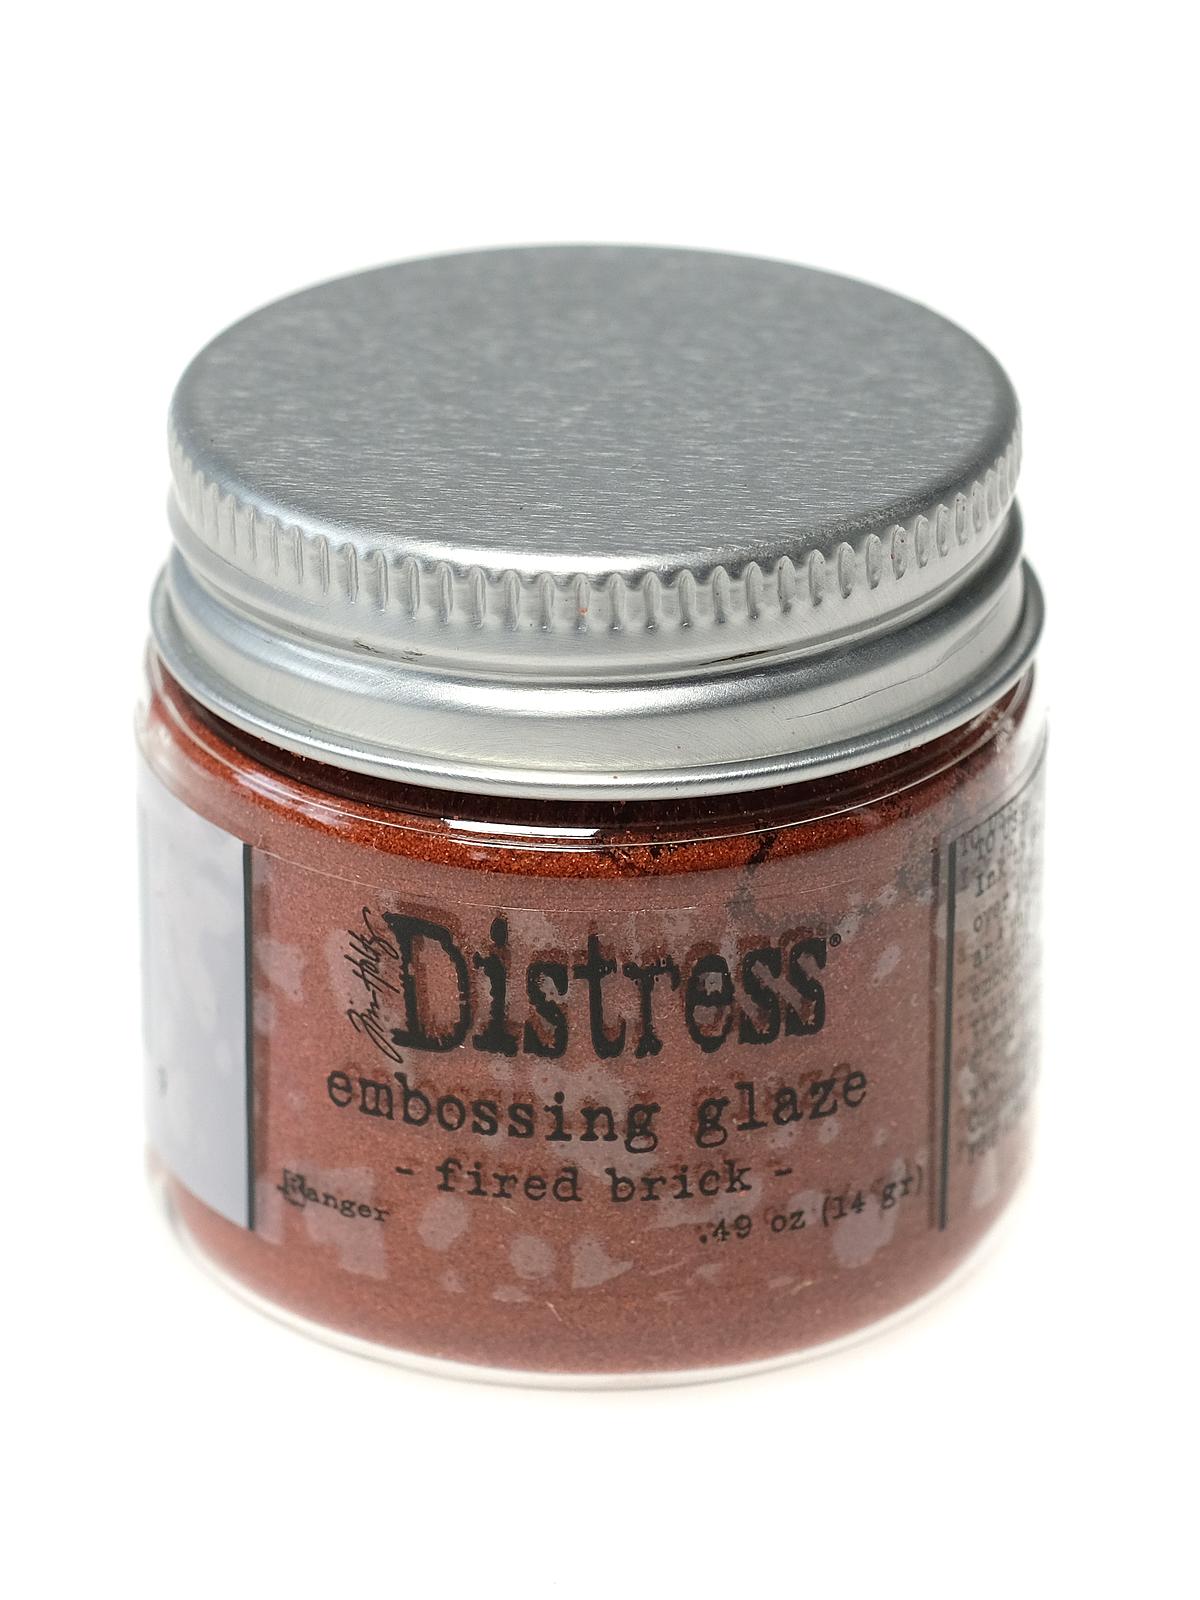 Tim Holtz Distress Embossing Glaze Fired Brick 1 Oz. Jar